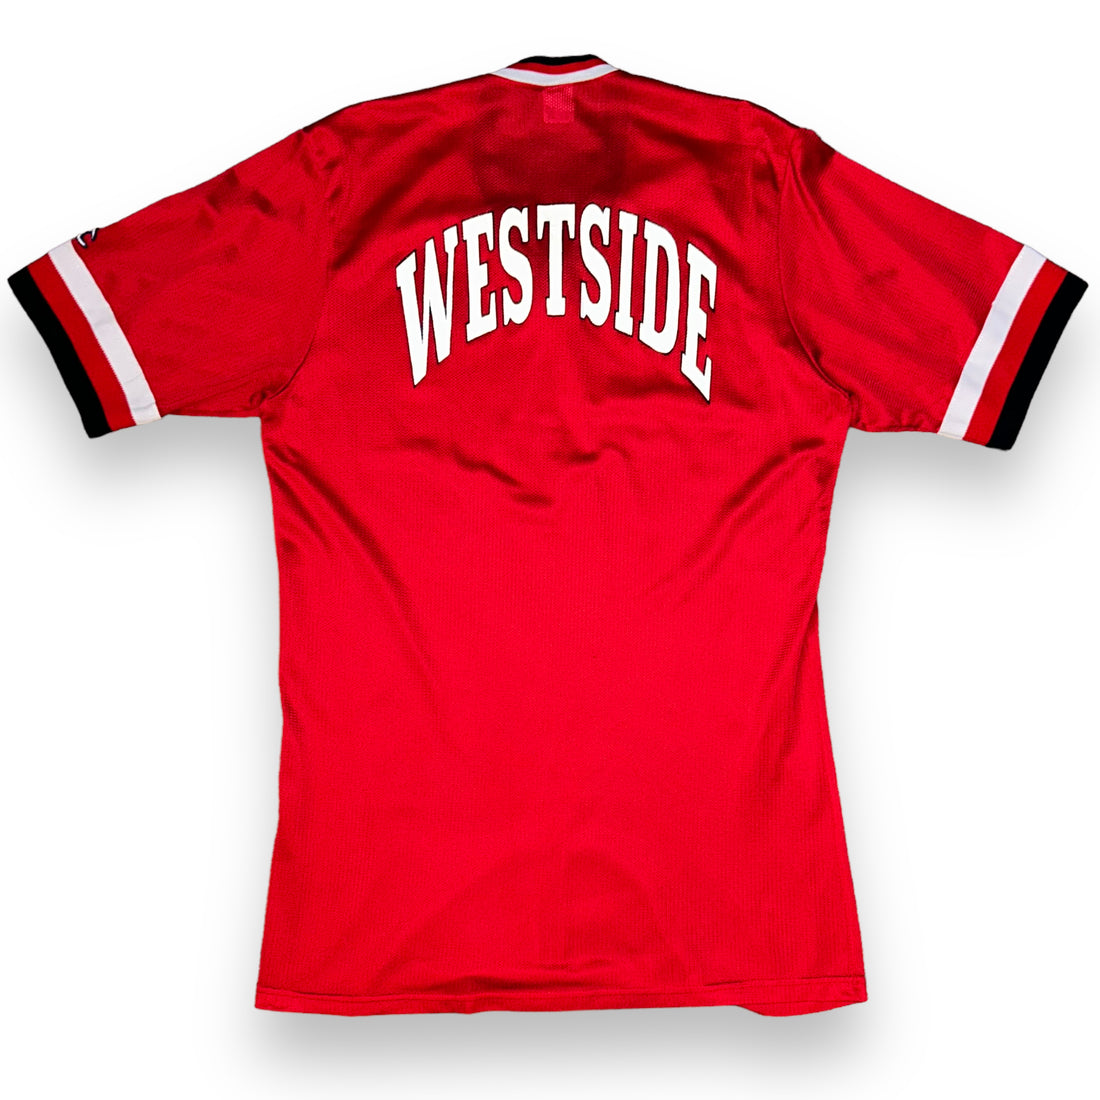 Westside Champion Vintage Jersey (M/L)